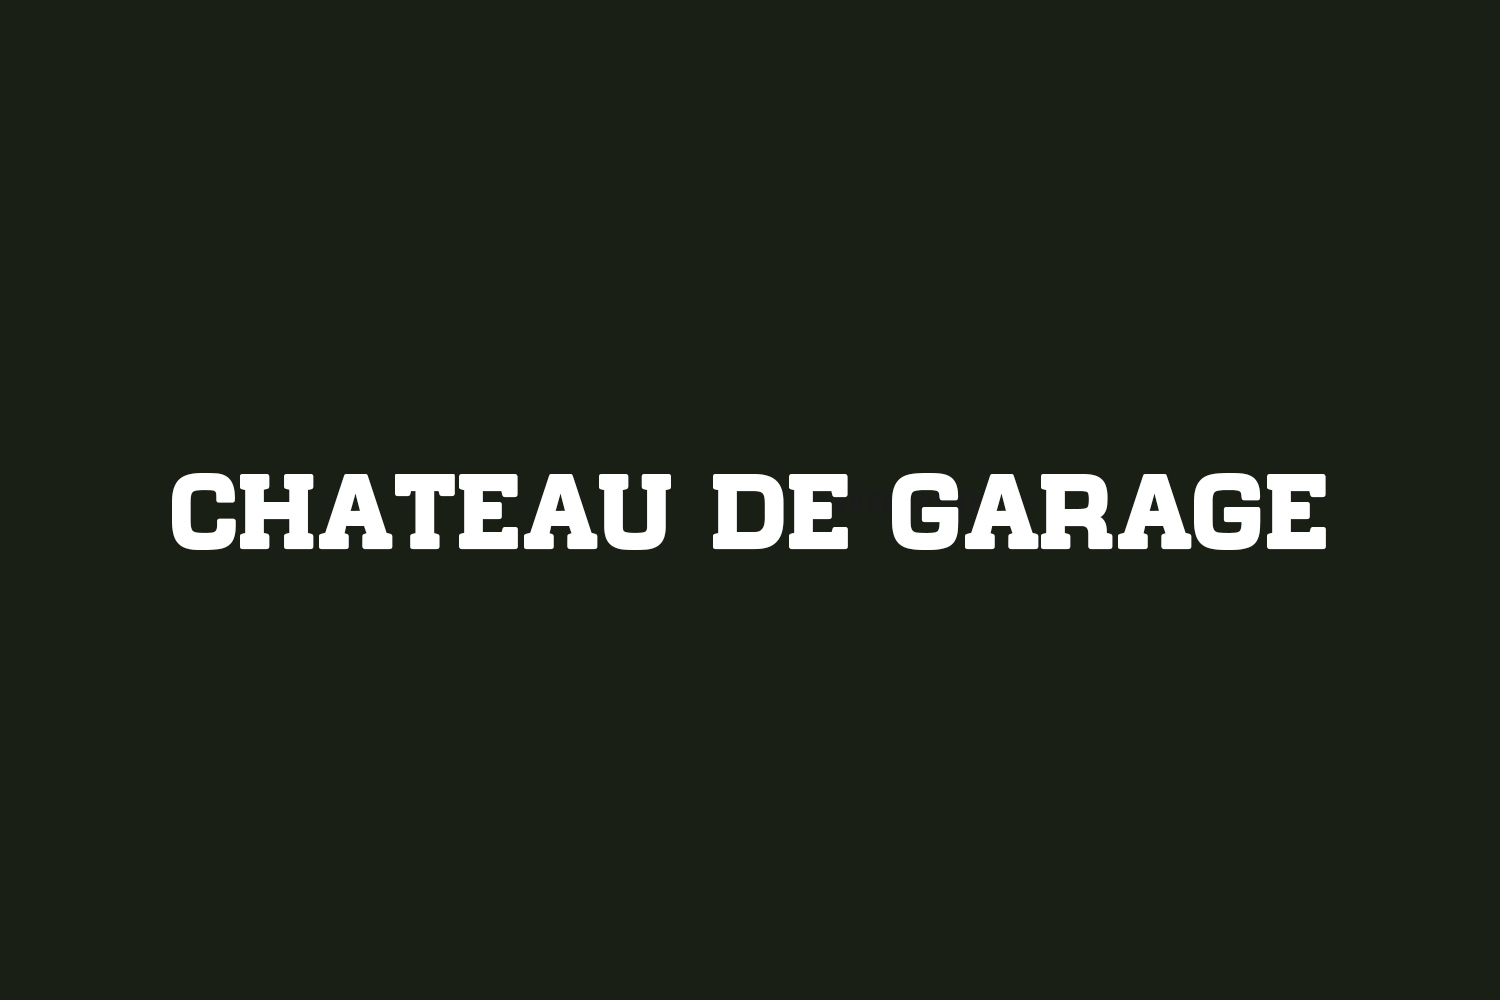 Chateau de Garage | Fonts Shmonts